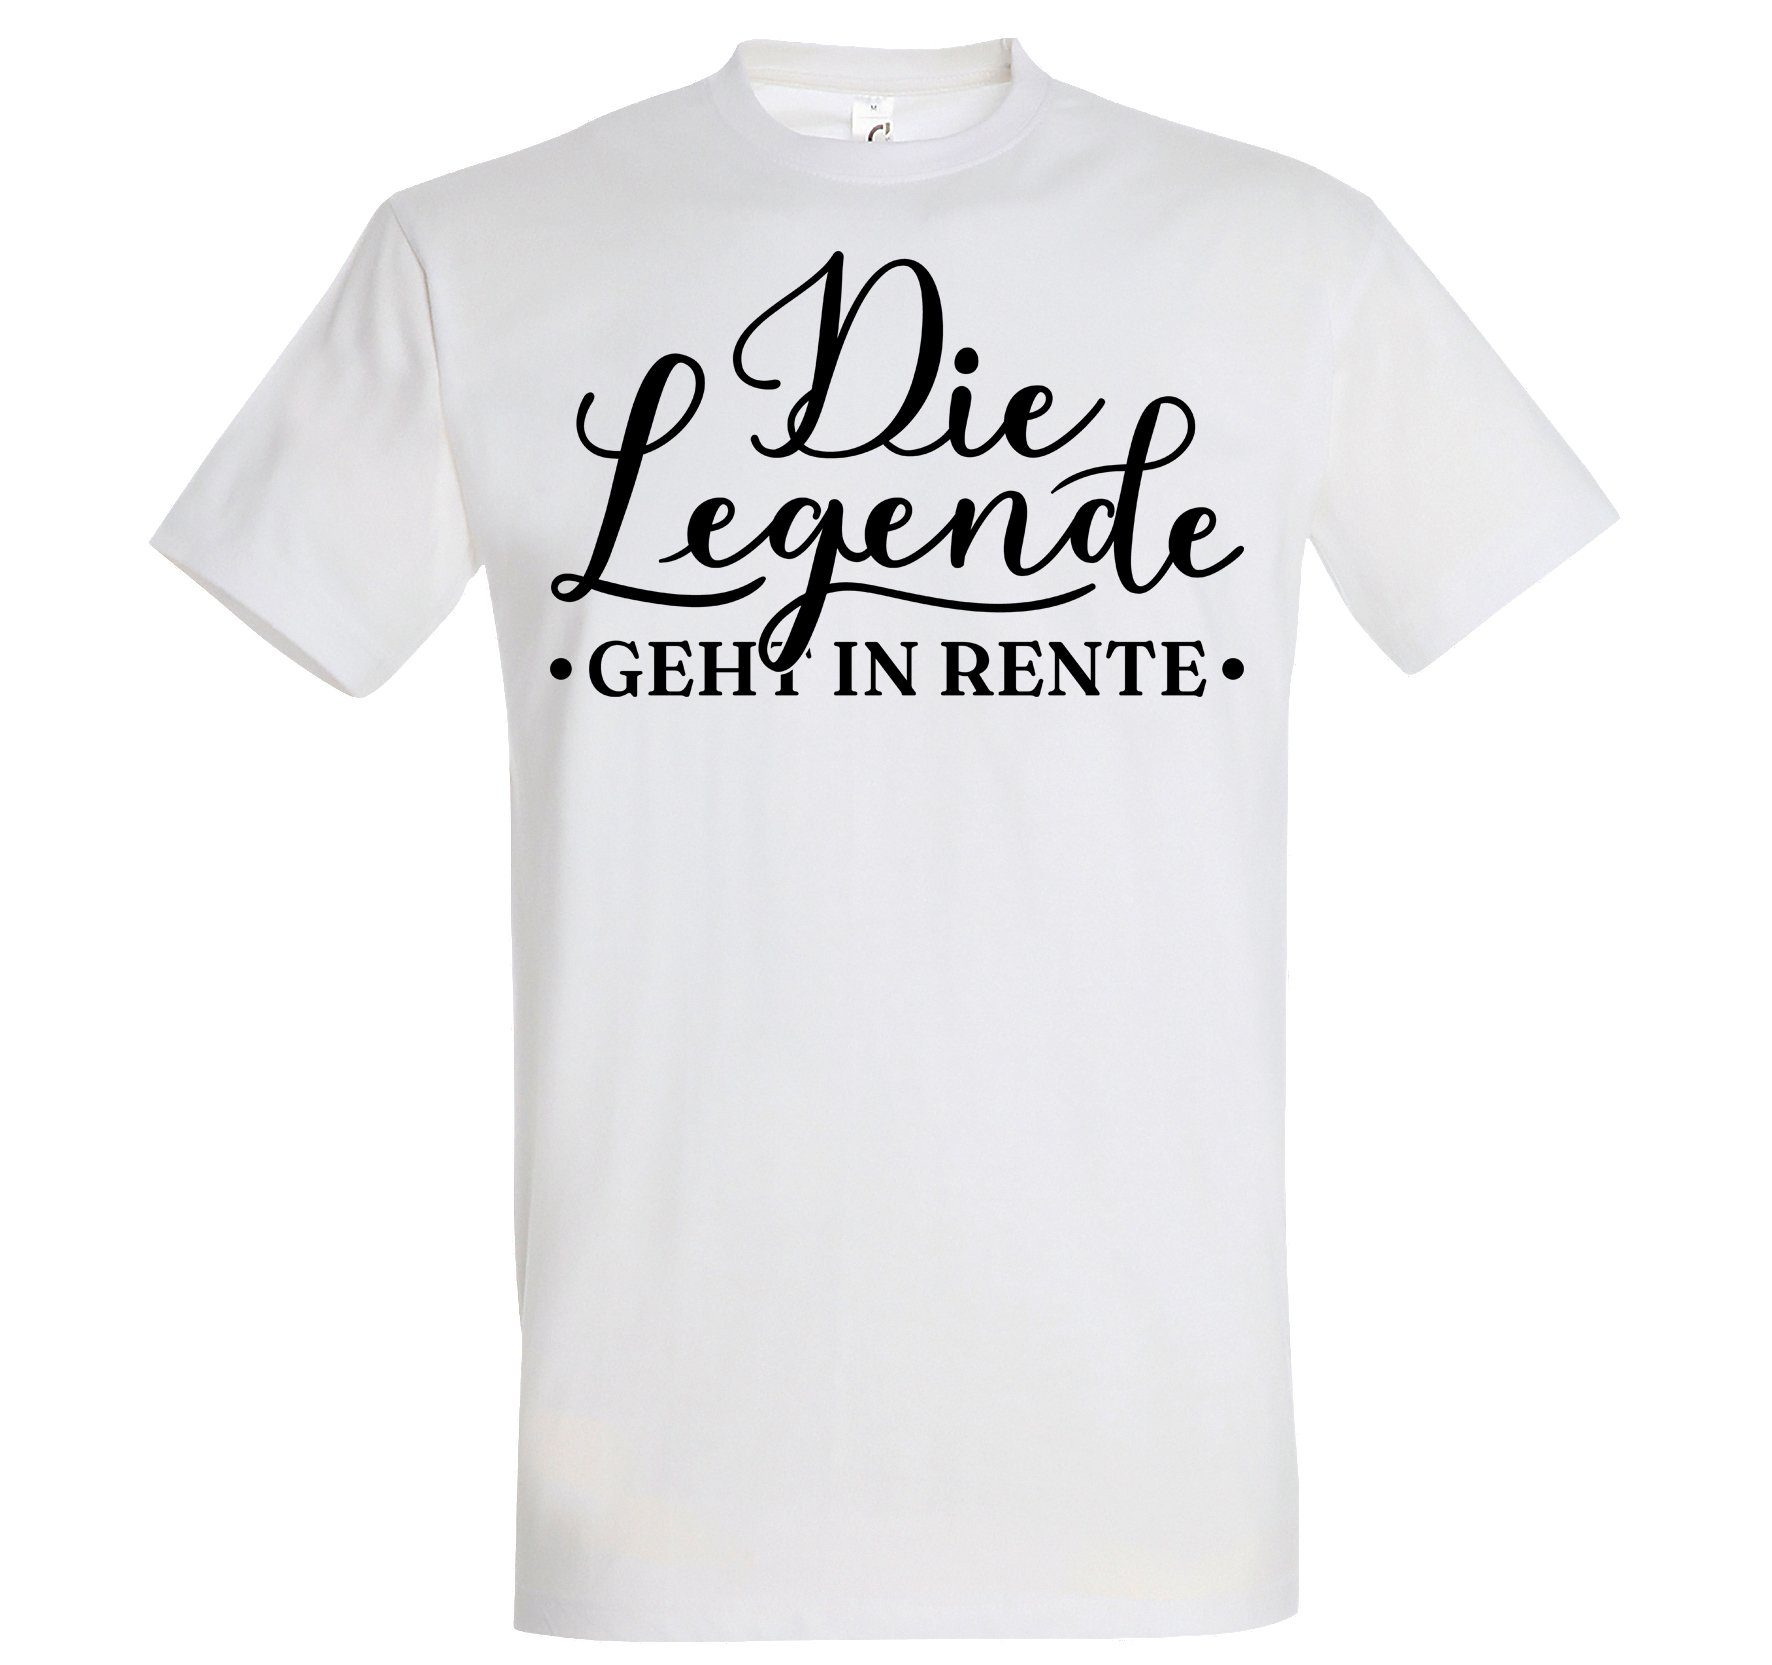 T-Shirt Designz Frontdruck Die in Shirt Weiss Rente Youth Legende mit Herren geht Trendigem